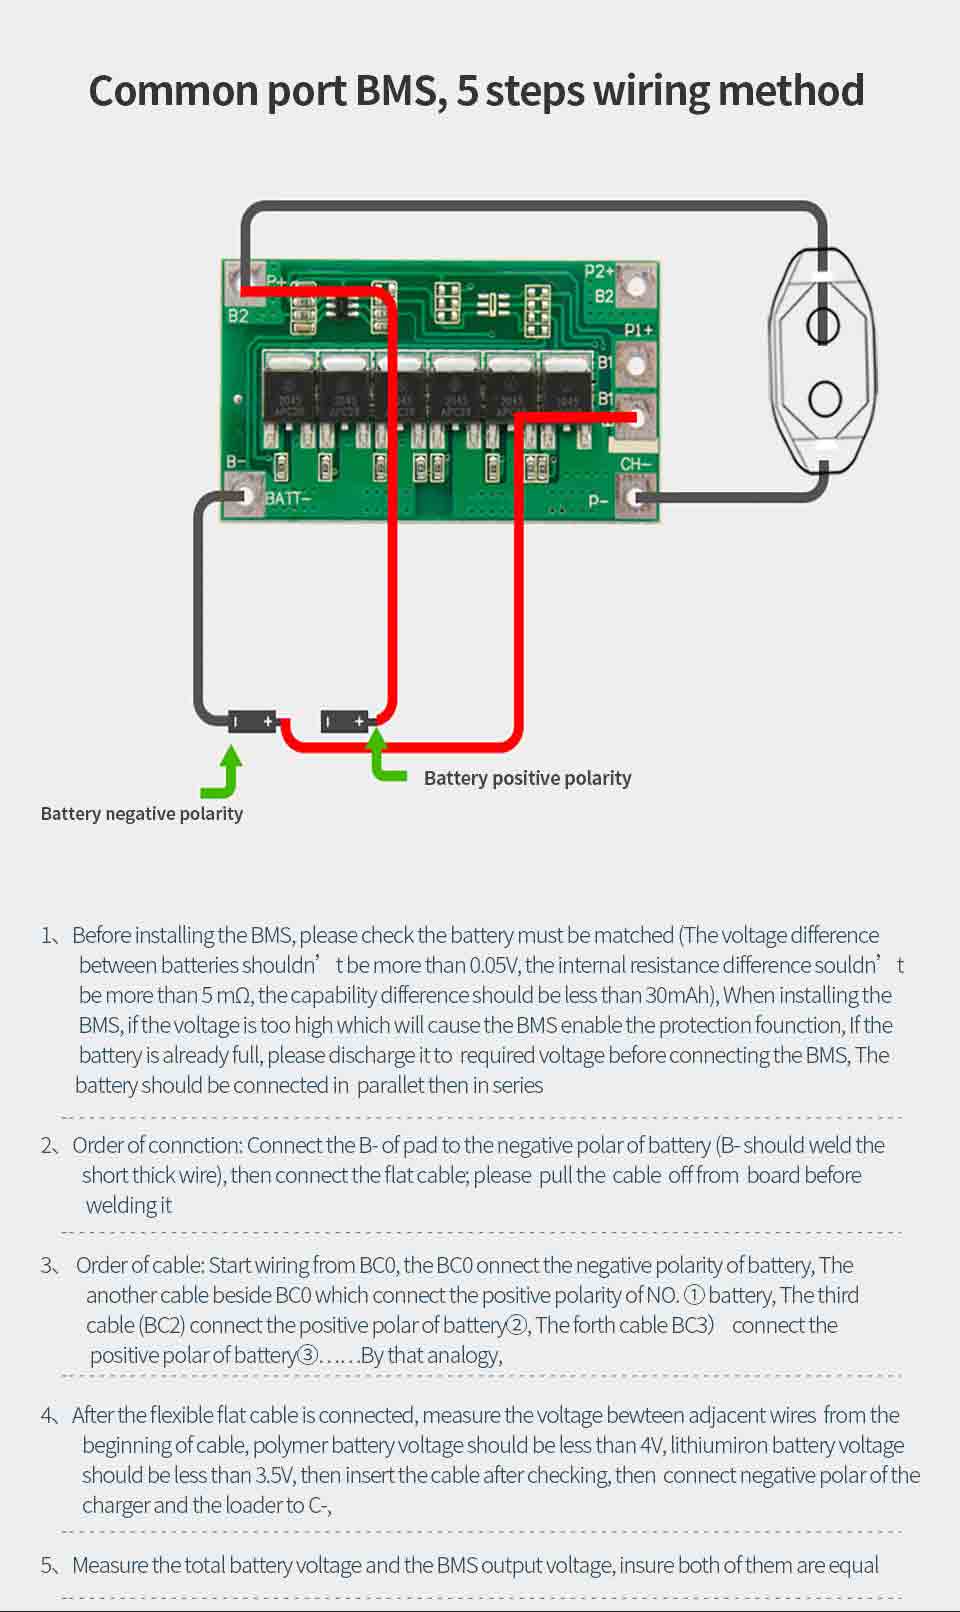 Common port BMS, 5 steps wiring method.